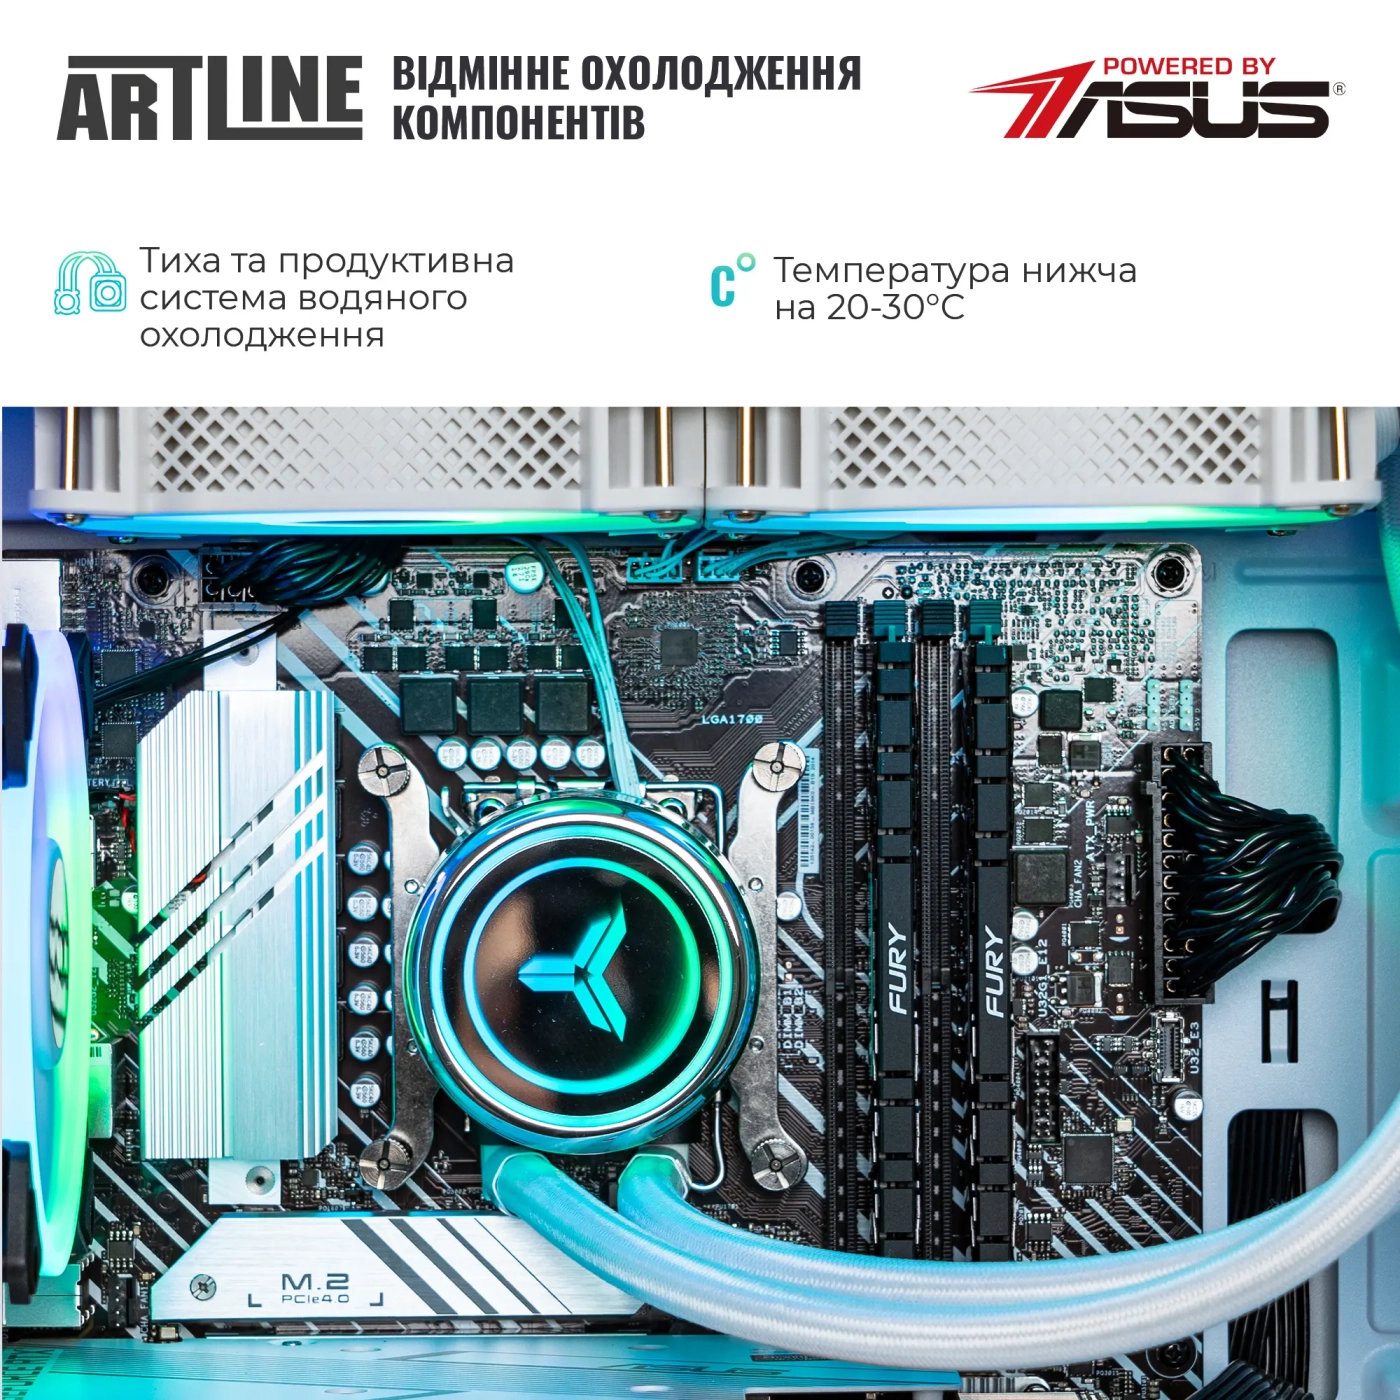 Купить Компьютер ARTLINE Gaming X59WHITE (X59WHITEv41) - фото 5